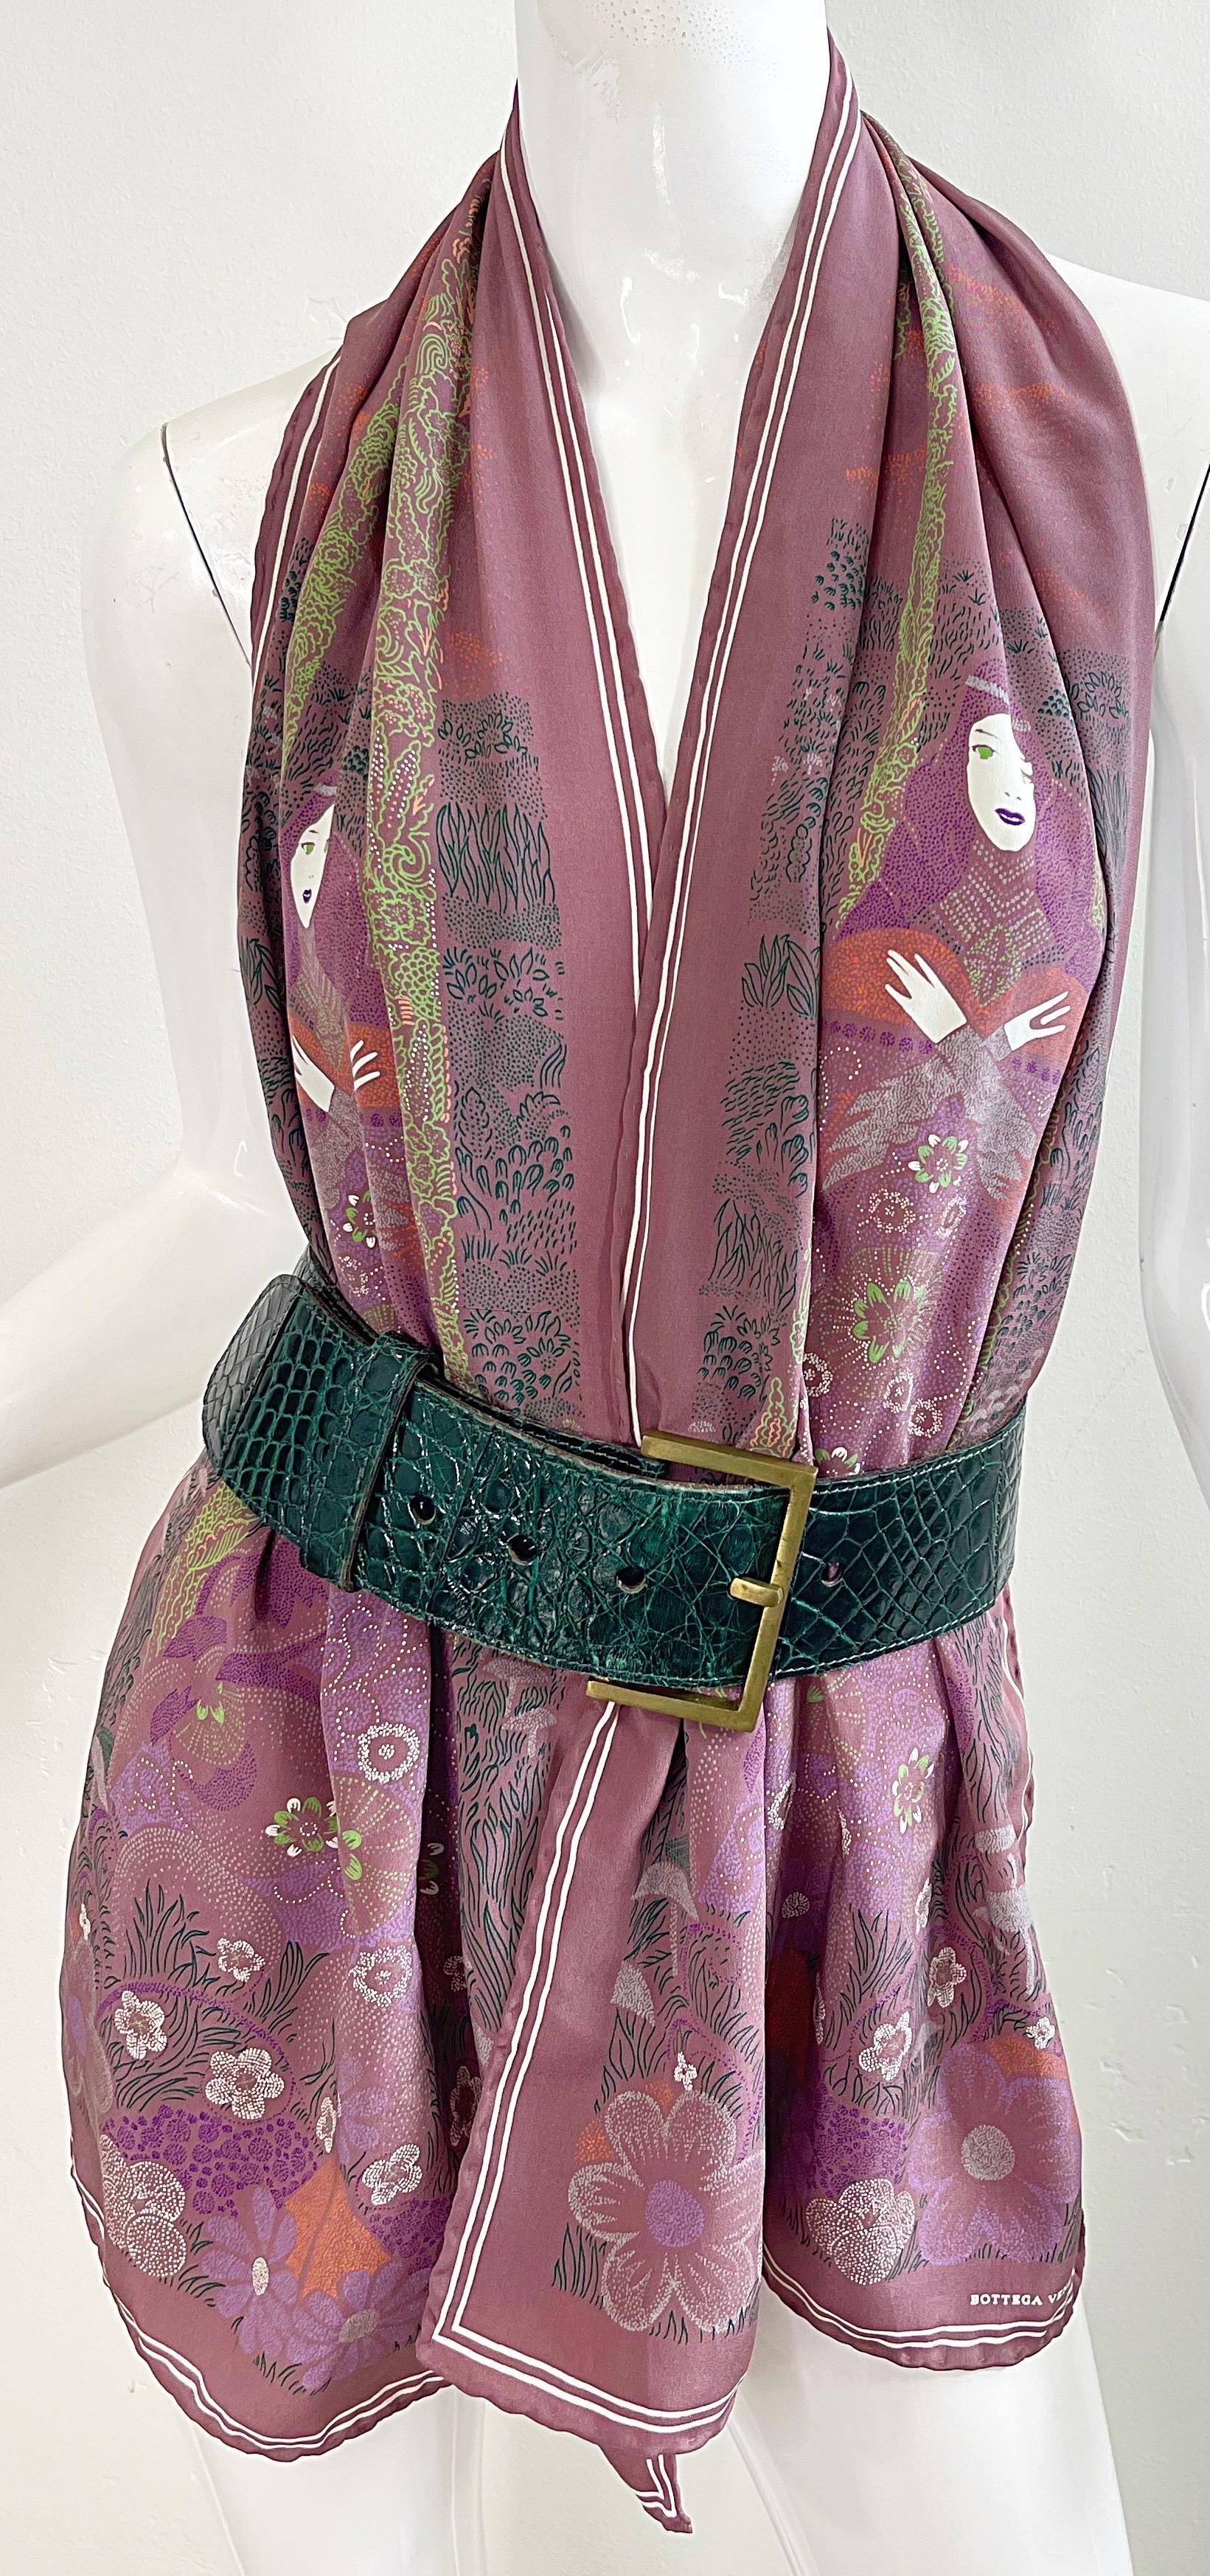 Bottega Veneta 1981 Klimt inspired Vintage 1980s Boho 80s Silk Scarf Top  For Sale 4